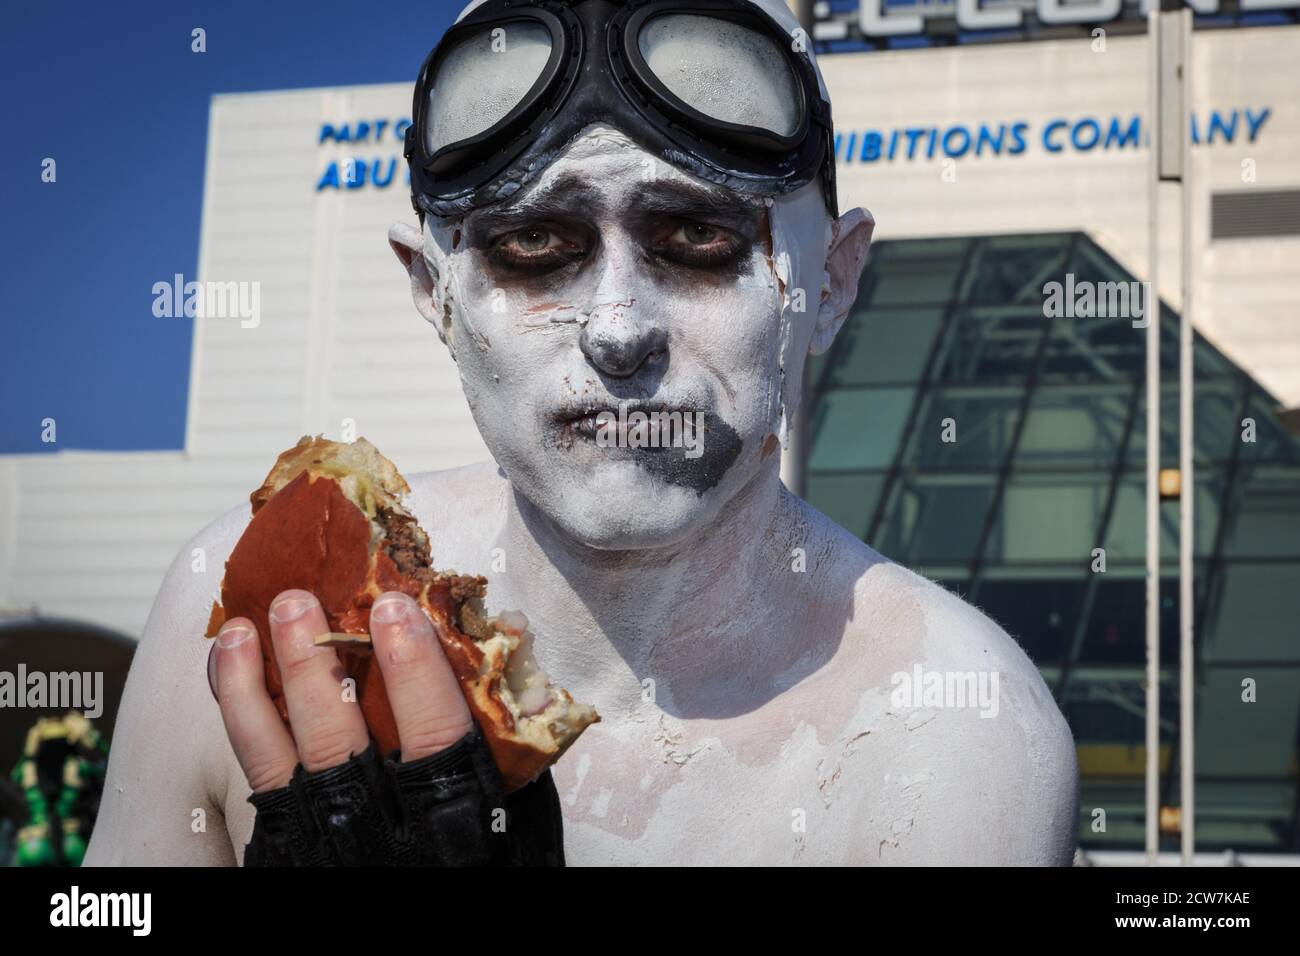 Ein Cosplayer munches auf seinem Burger in Ganzkörperfarbe bei MCM comicon London, Großbritannien Stockfoto